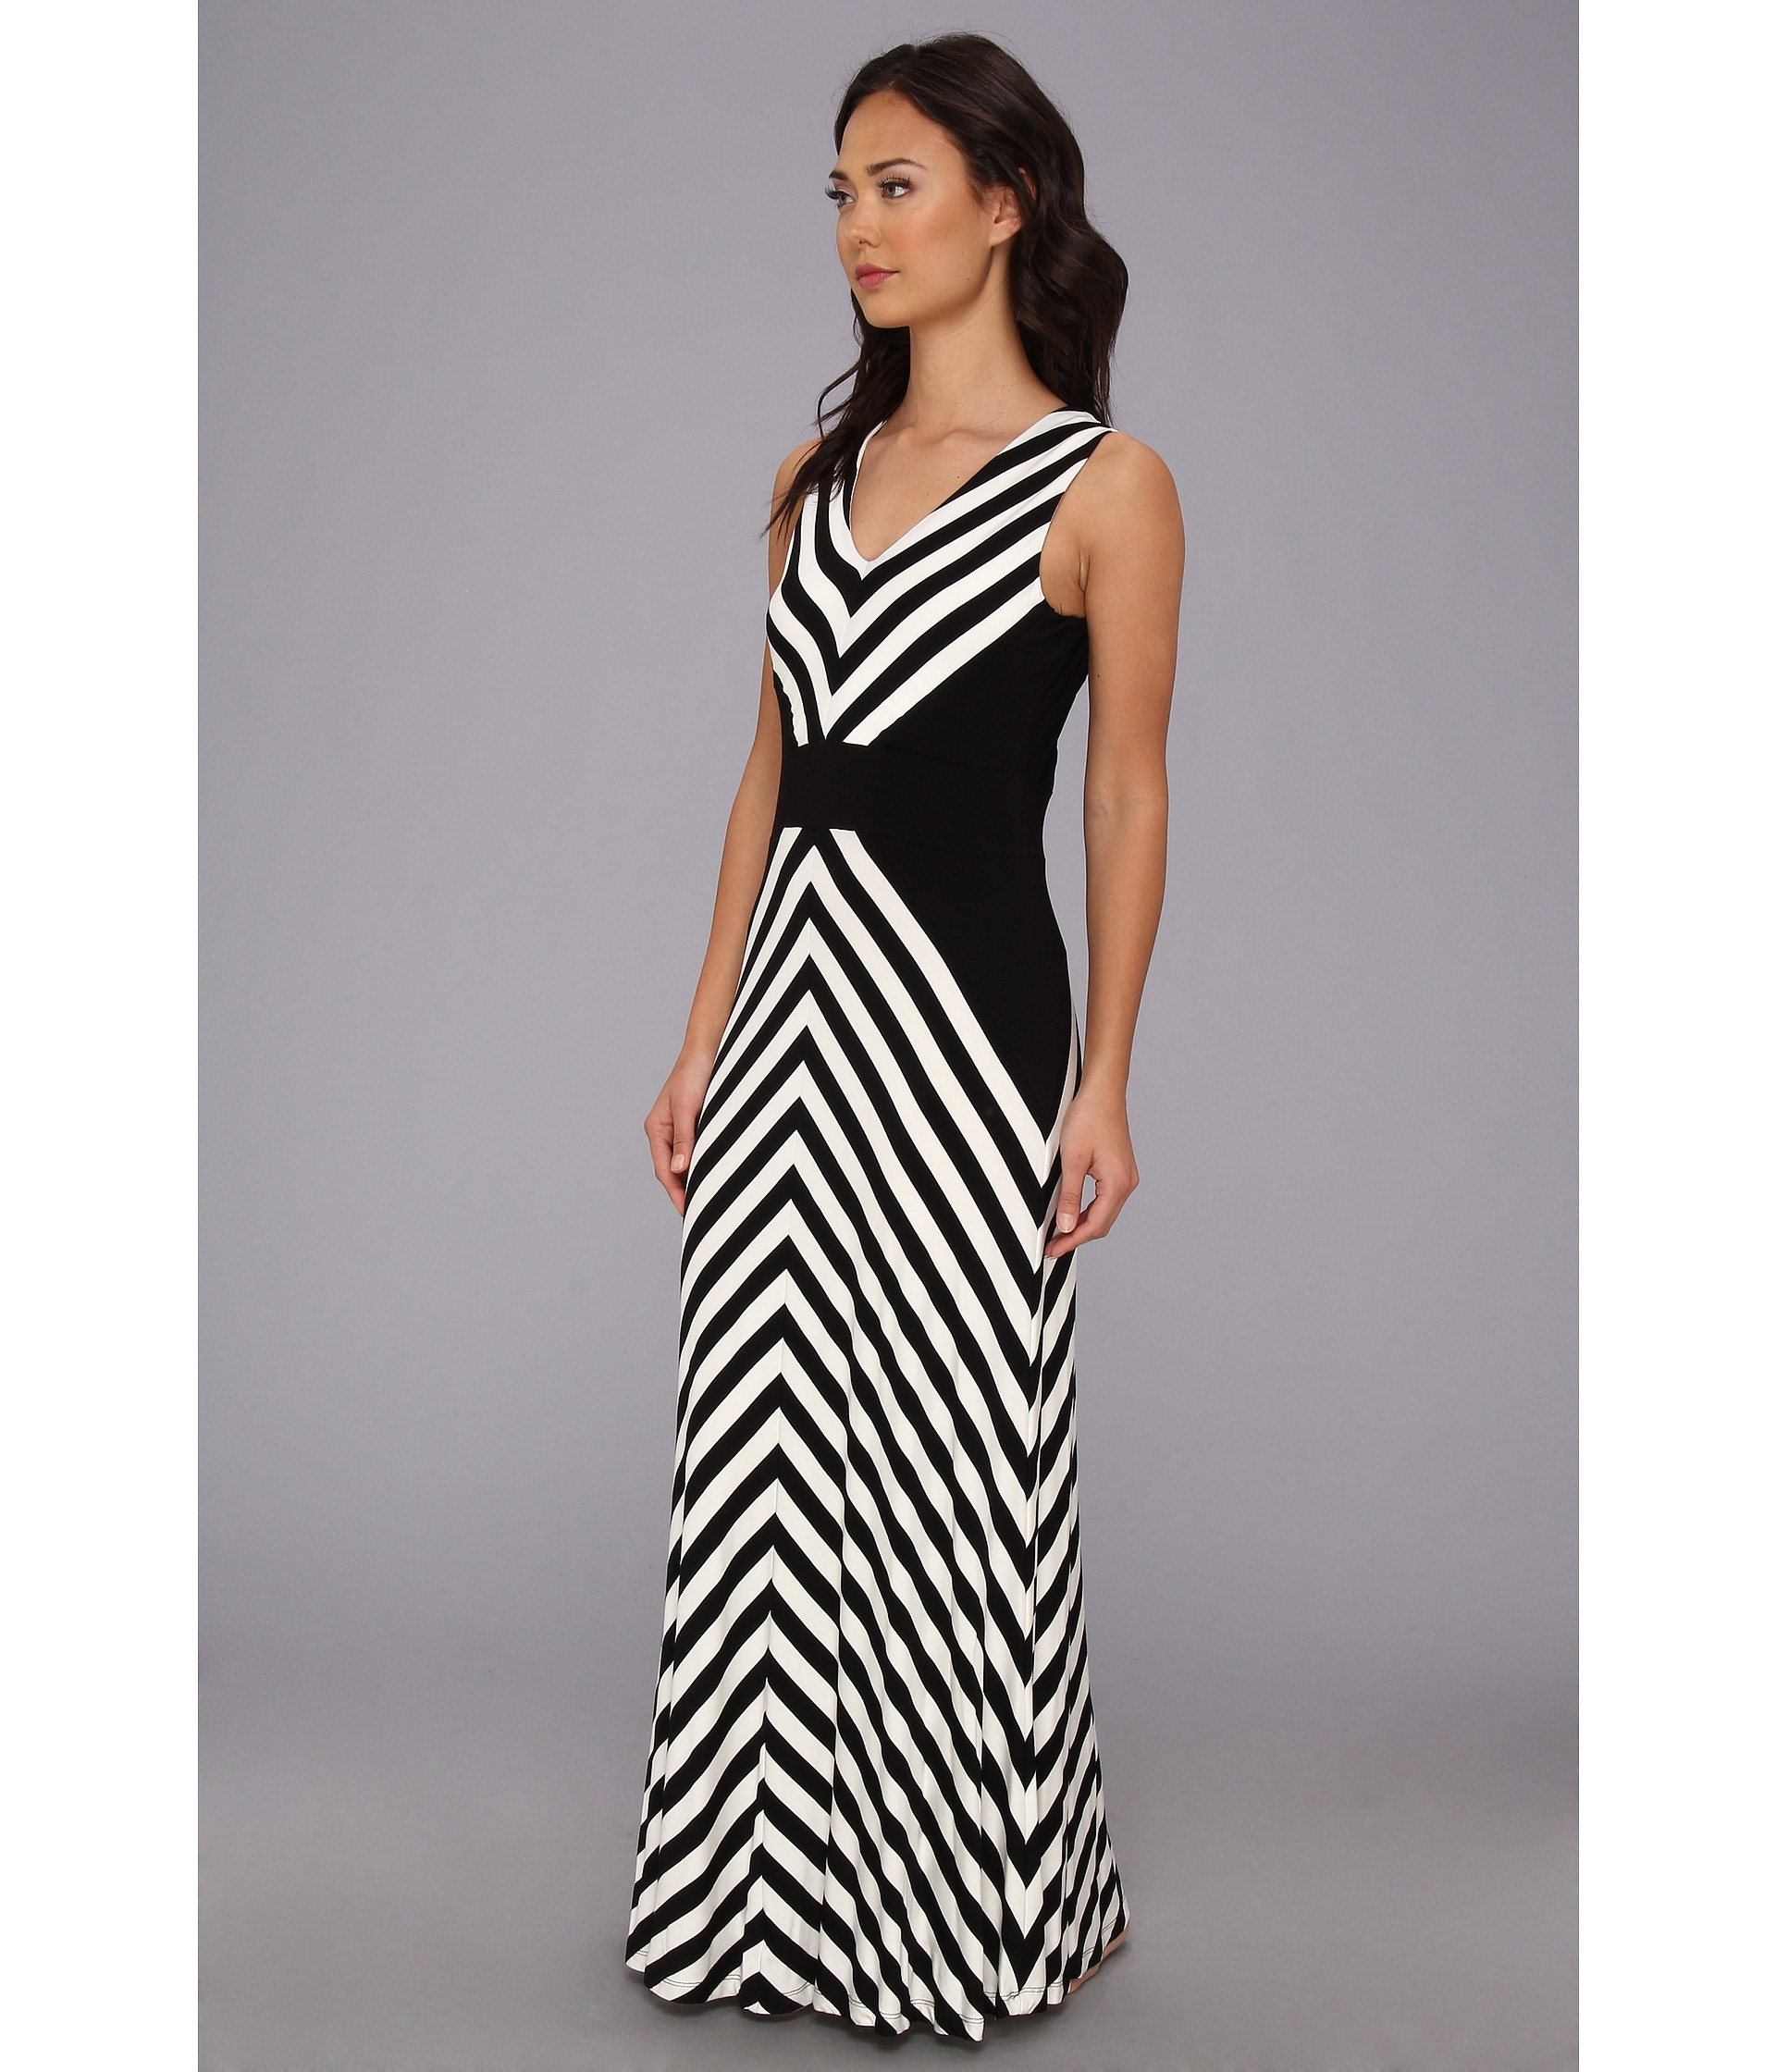 Lyst - Calvin Klein Mitered Striped Maxi Dress in Black